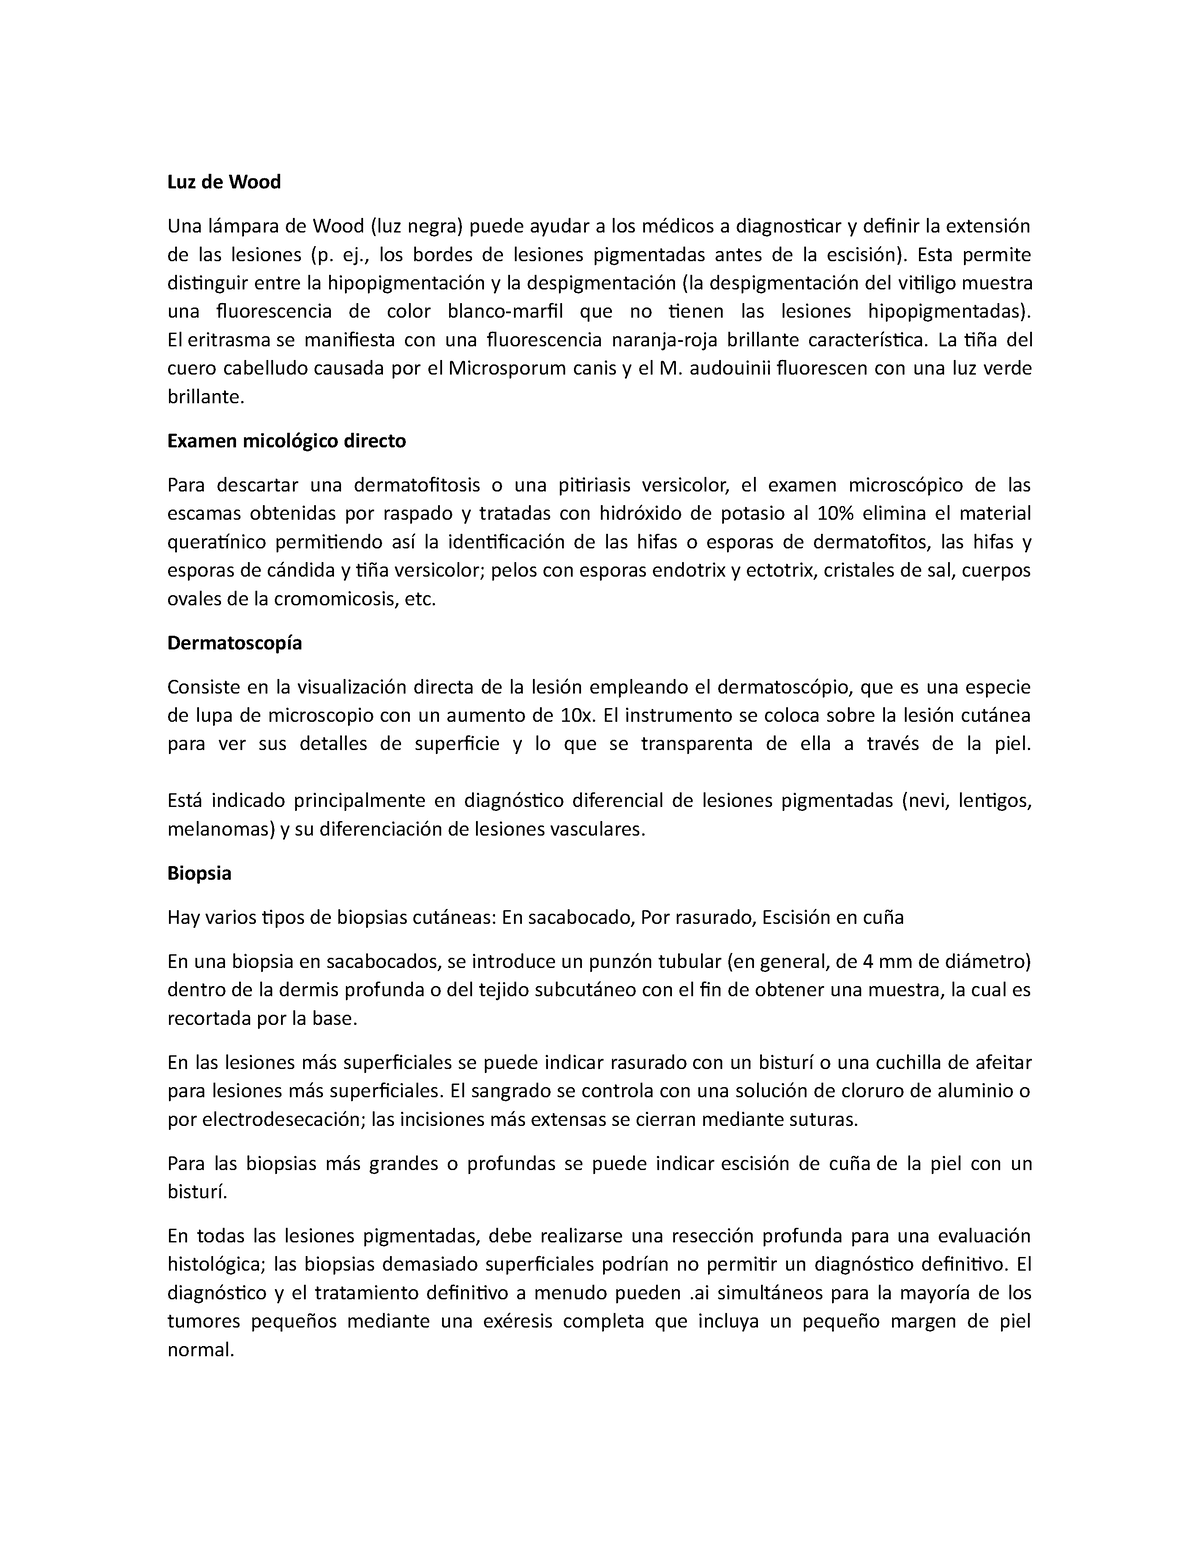 PDF) CASO DEMOSTRATIVO DE UN FALSO POSITIVO CON USO DE LA LÁMPARA DE WOOD